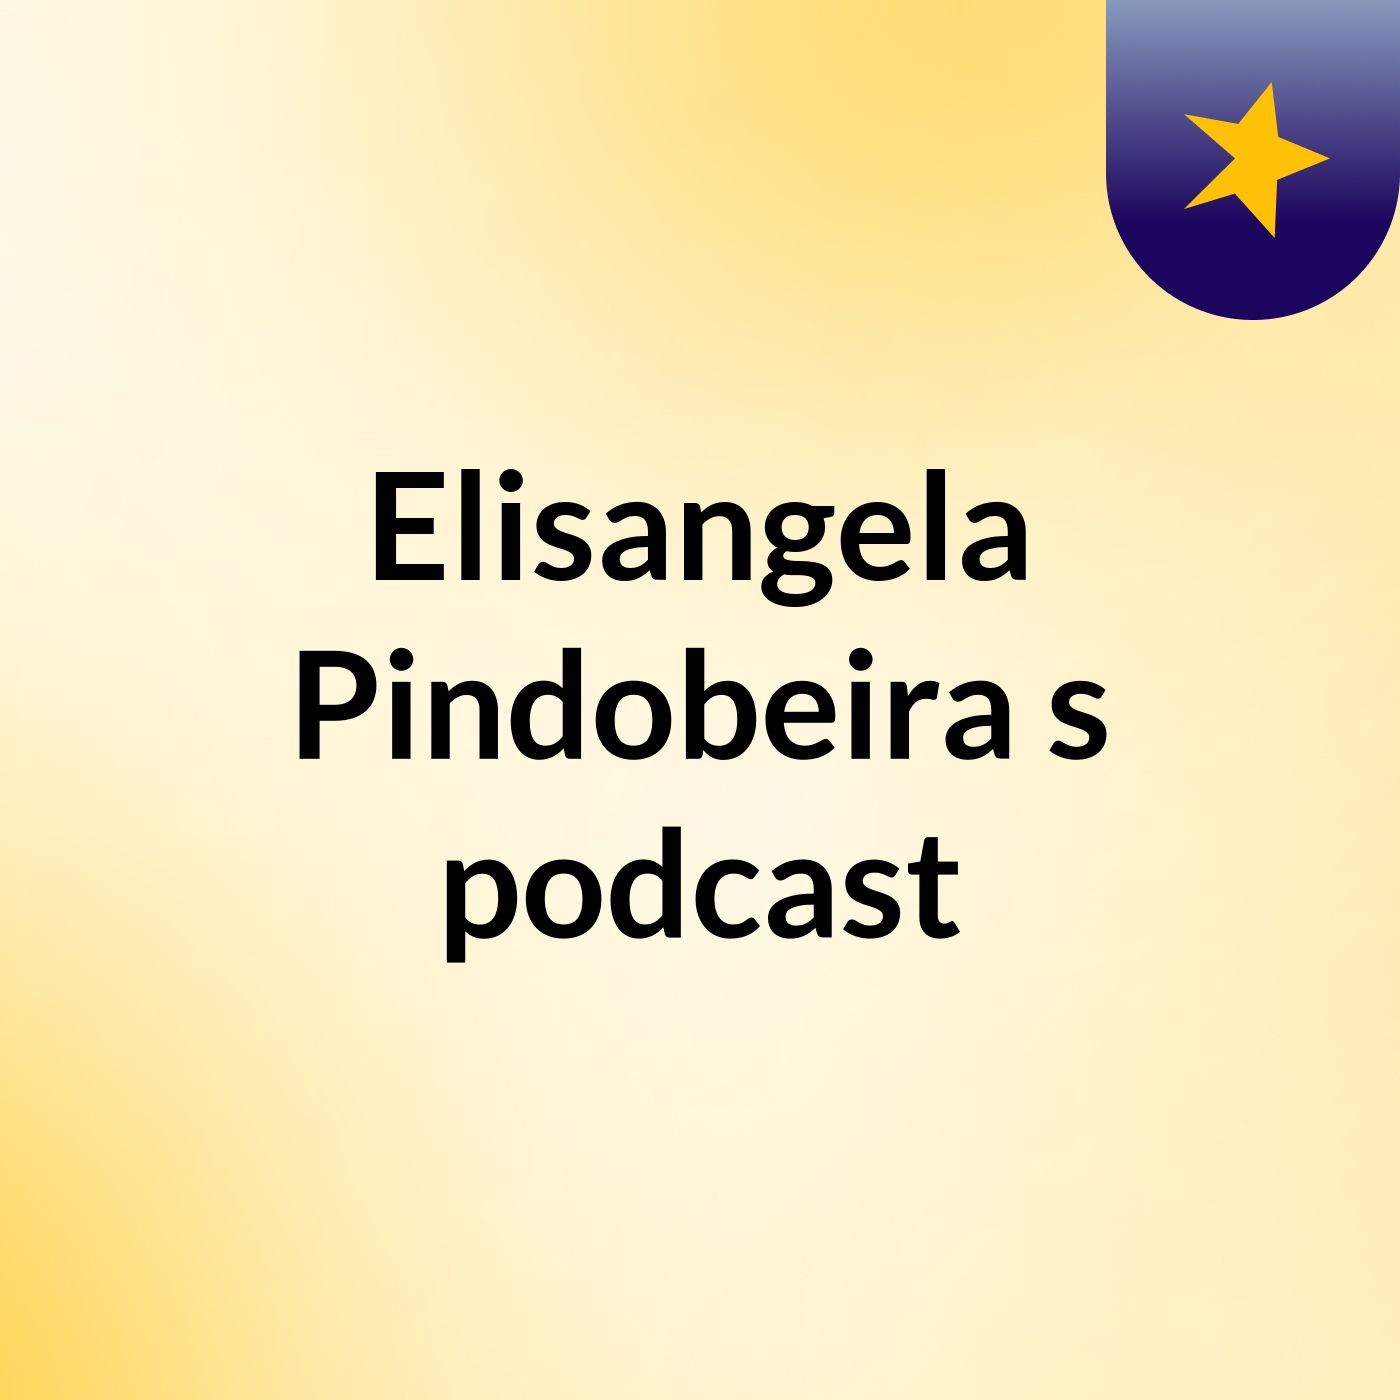 Elisangela Pindobeira's podcast